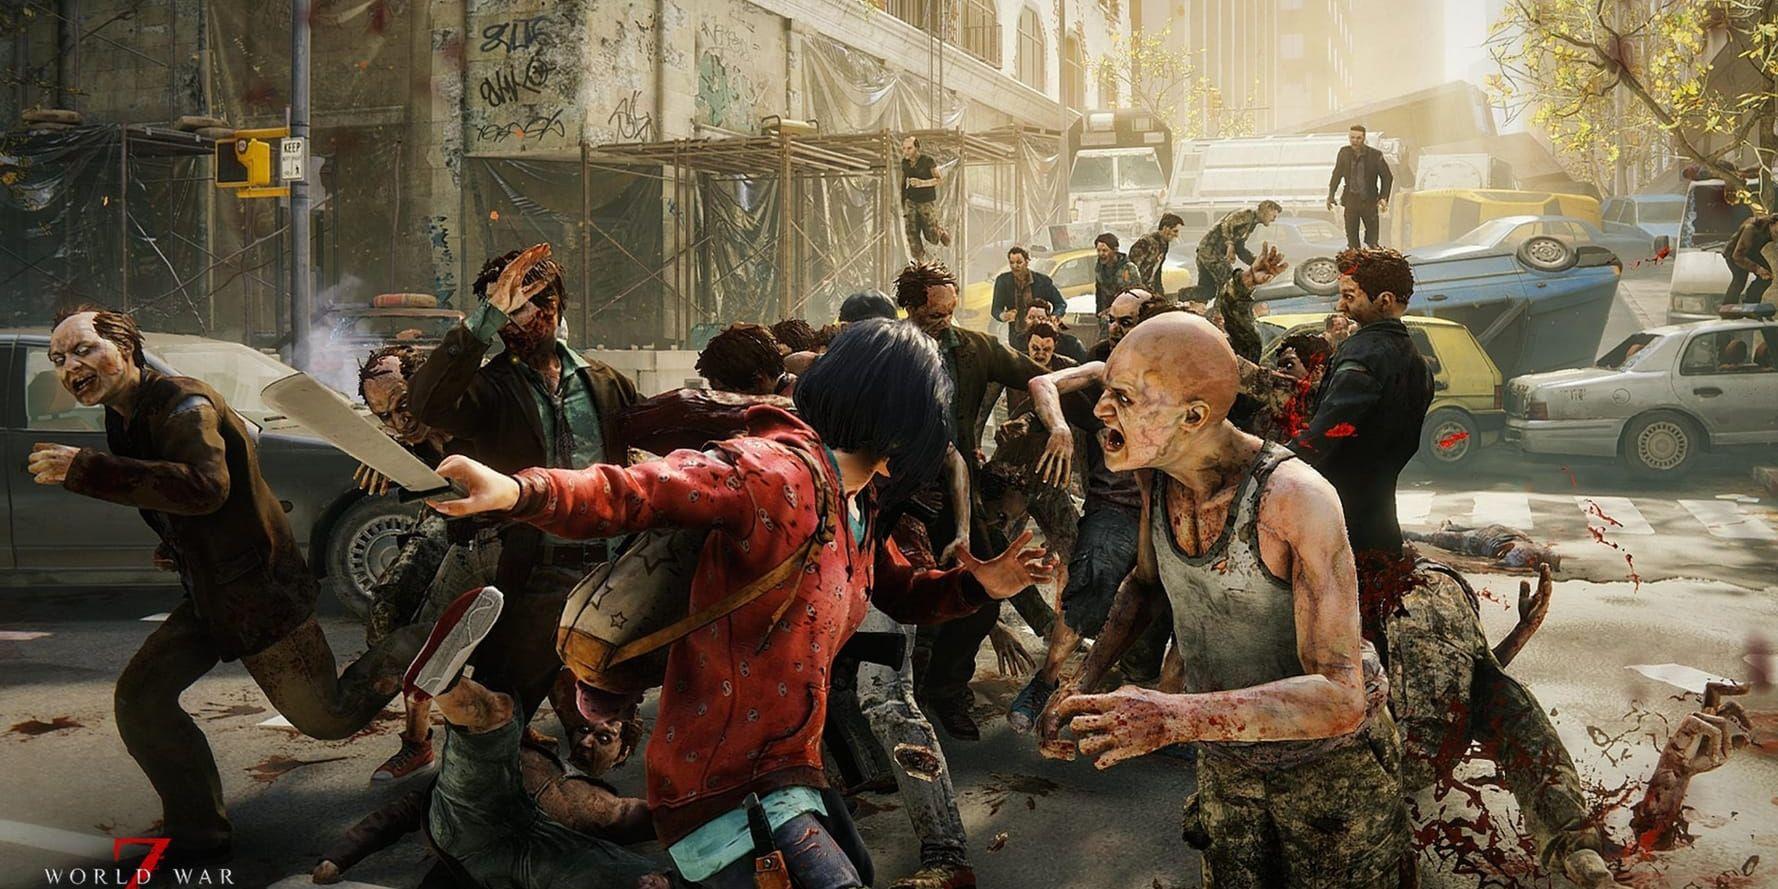 Zombier är hett i spelvärlden. "World war z" har sålt bättre än väntat, enligt utvecklaren Saber.